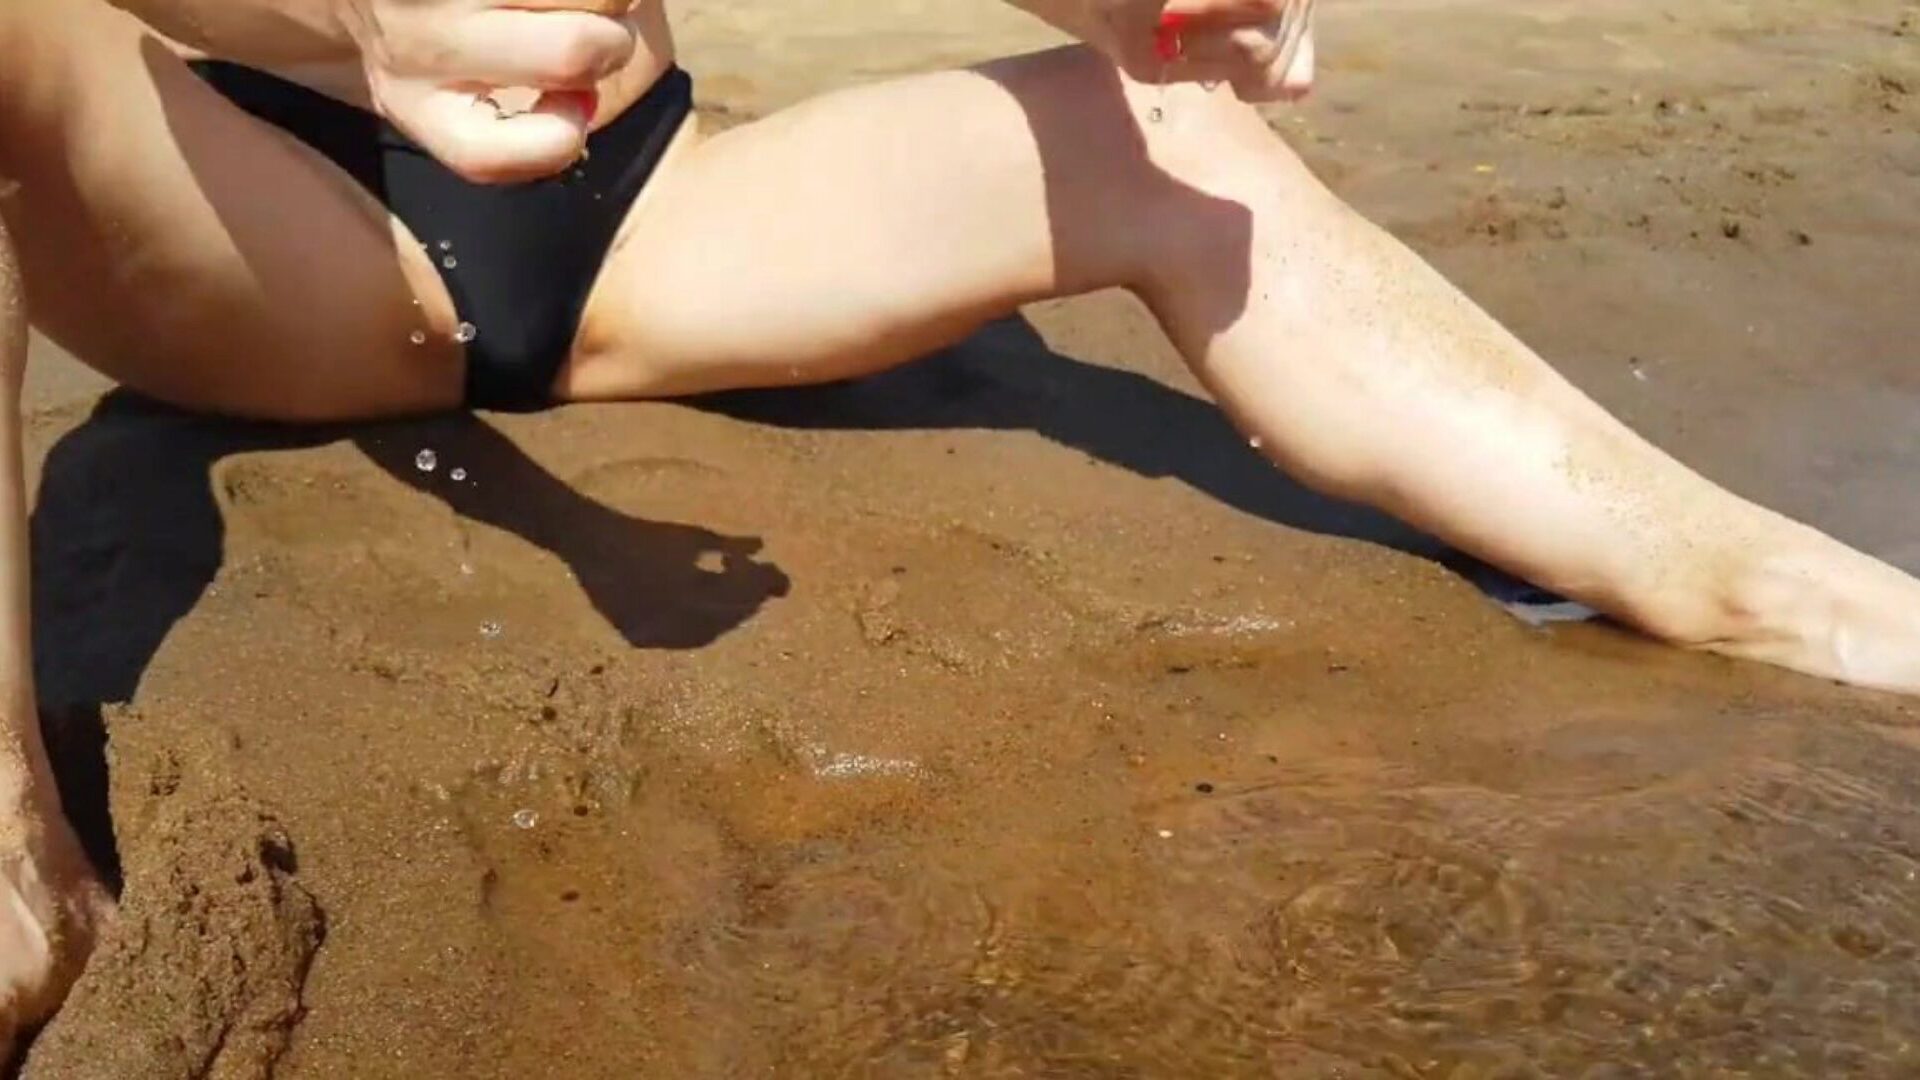 nastolatka palcuje się na publicznej plaży i dostaje naprawdę fajny orgazm - ciasna cipka playskitty ultra hd 4k